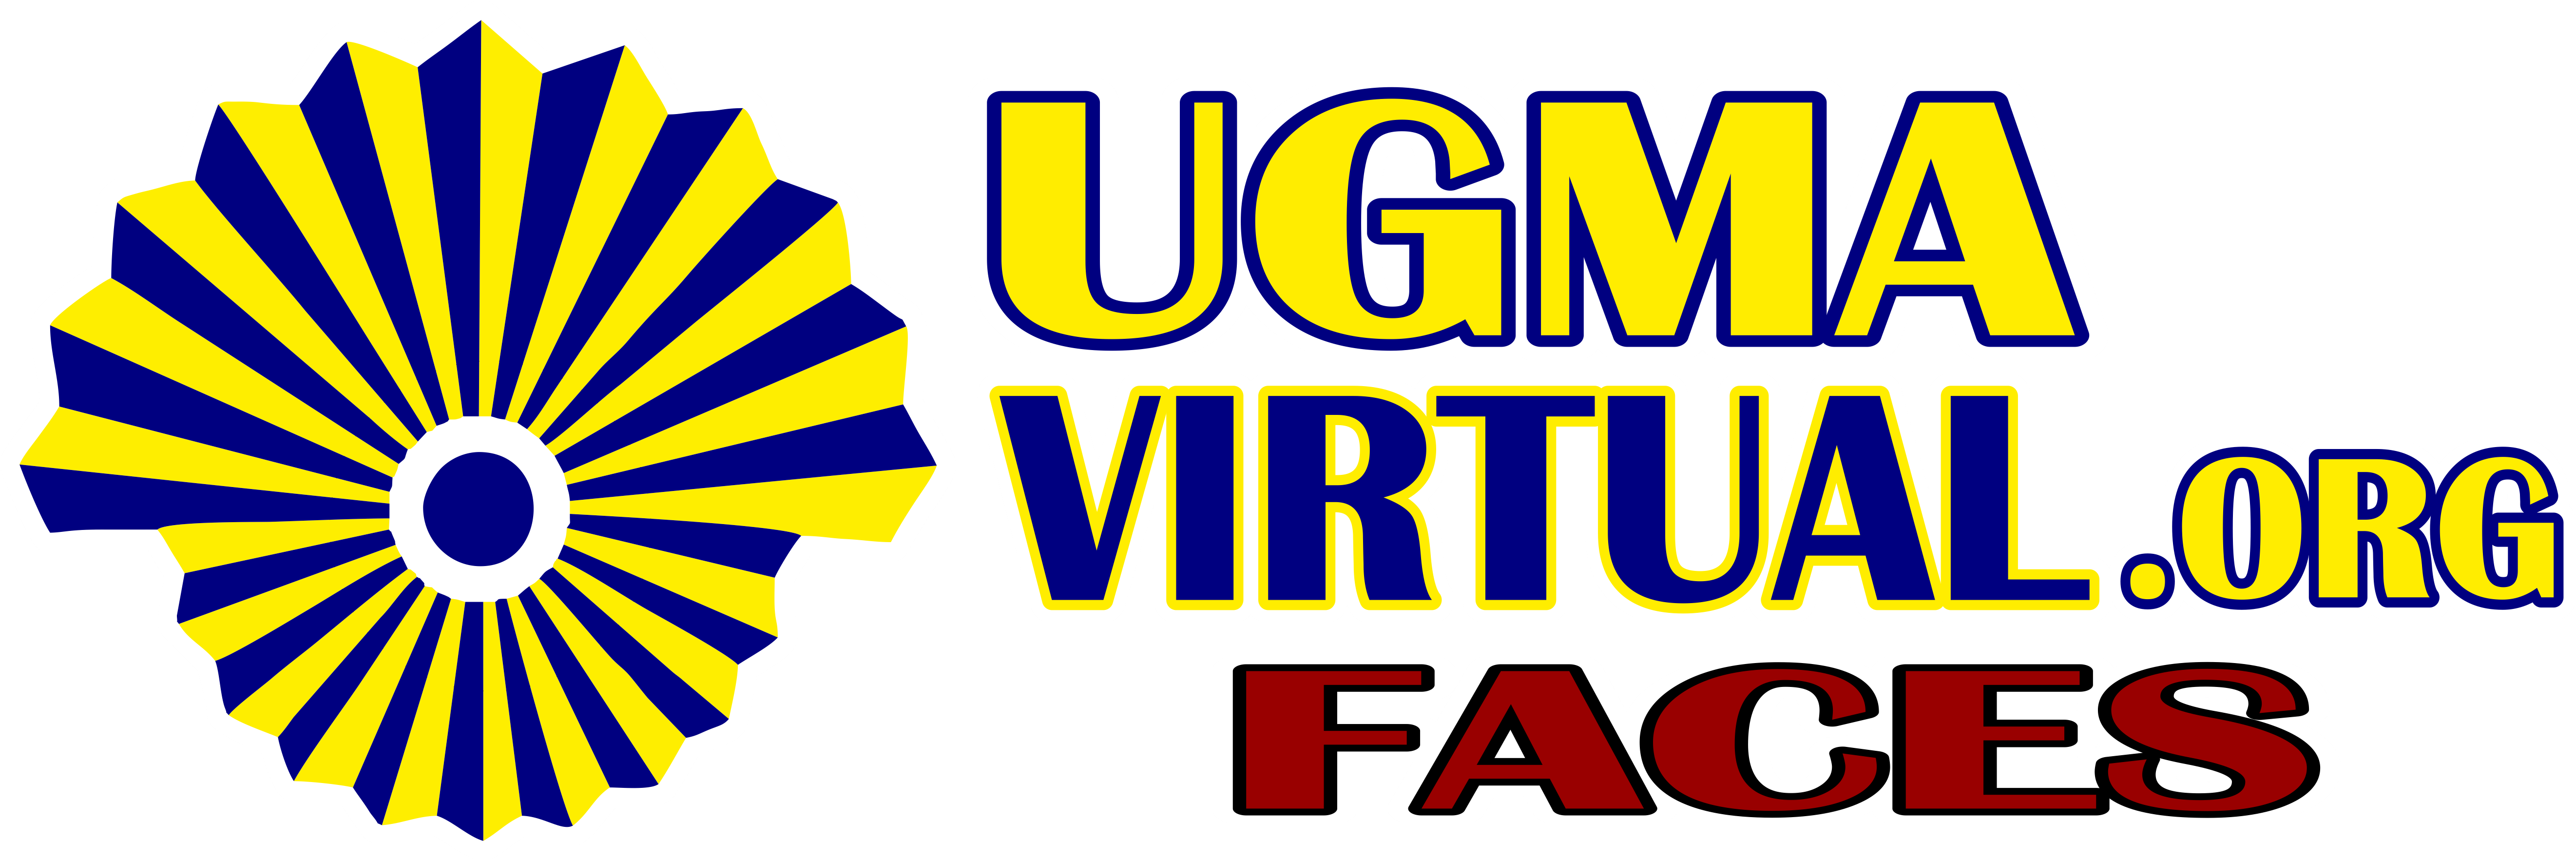 UGMA-FACES